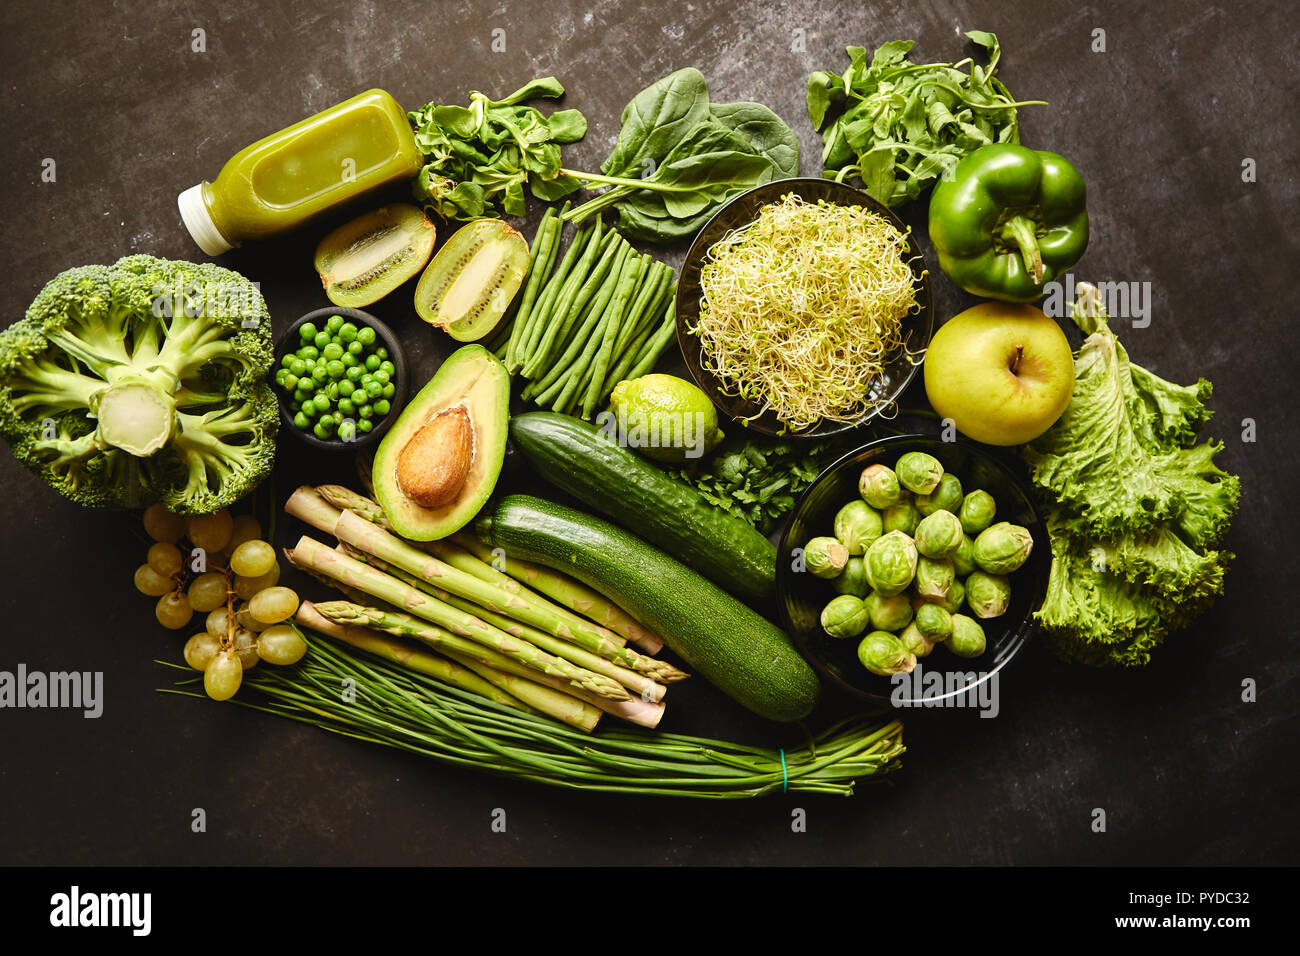 La composition des aliments sains verte avec de l'avocat, brocoli, pomme smoothie, cucomber, asperges, de kiwi et de haricots. Placé sur un arrière-plan foncé. Vue d'en haut. Banque D'Images